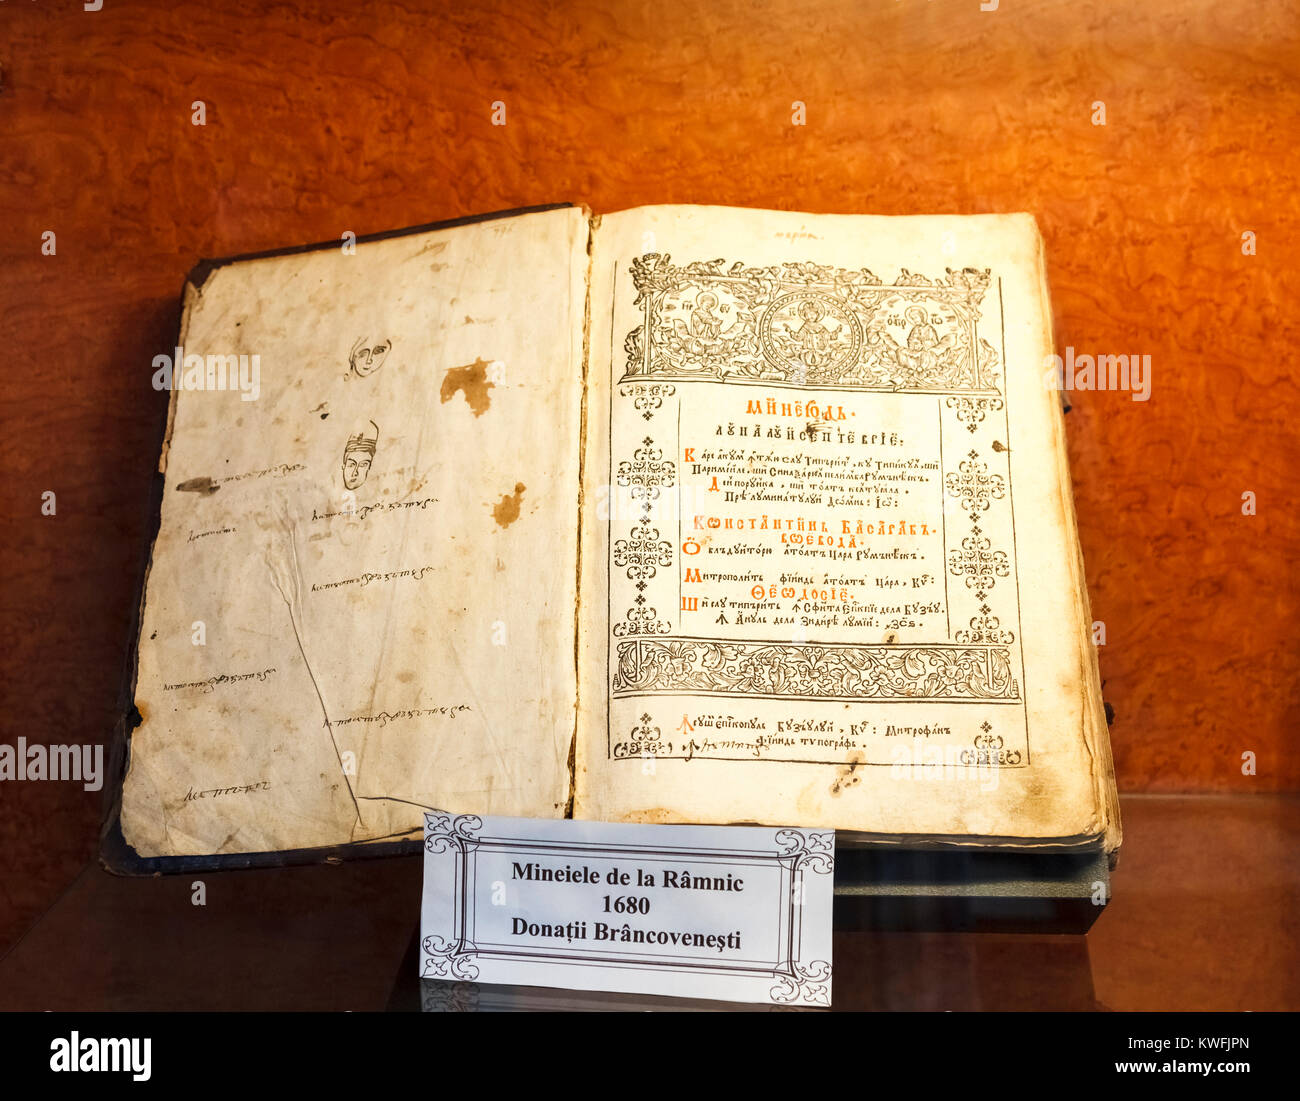 Antiguo manuscrito libro, una exposición en el Museo de la primera escuela rumana, Schei, distrito de Brasov, una ciudad de la región rumana de Transilvania central Foto de stock